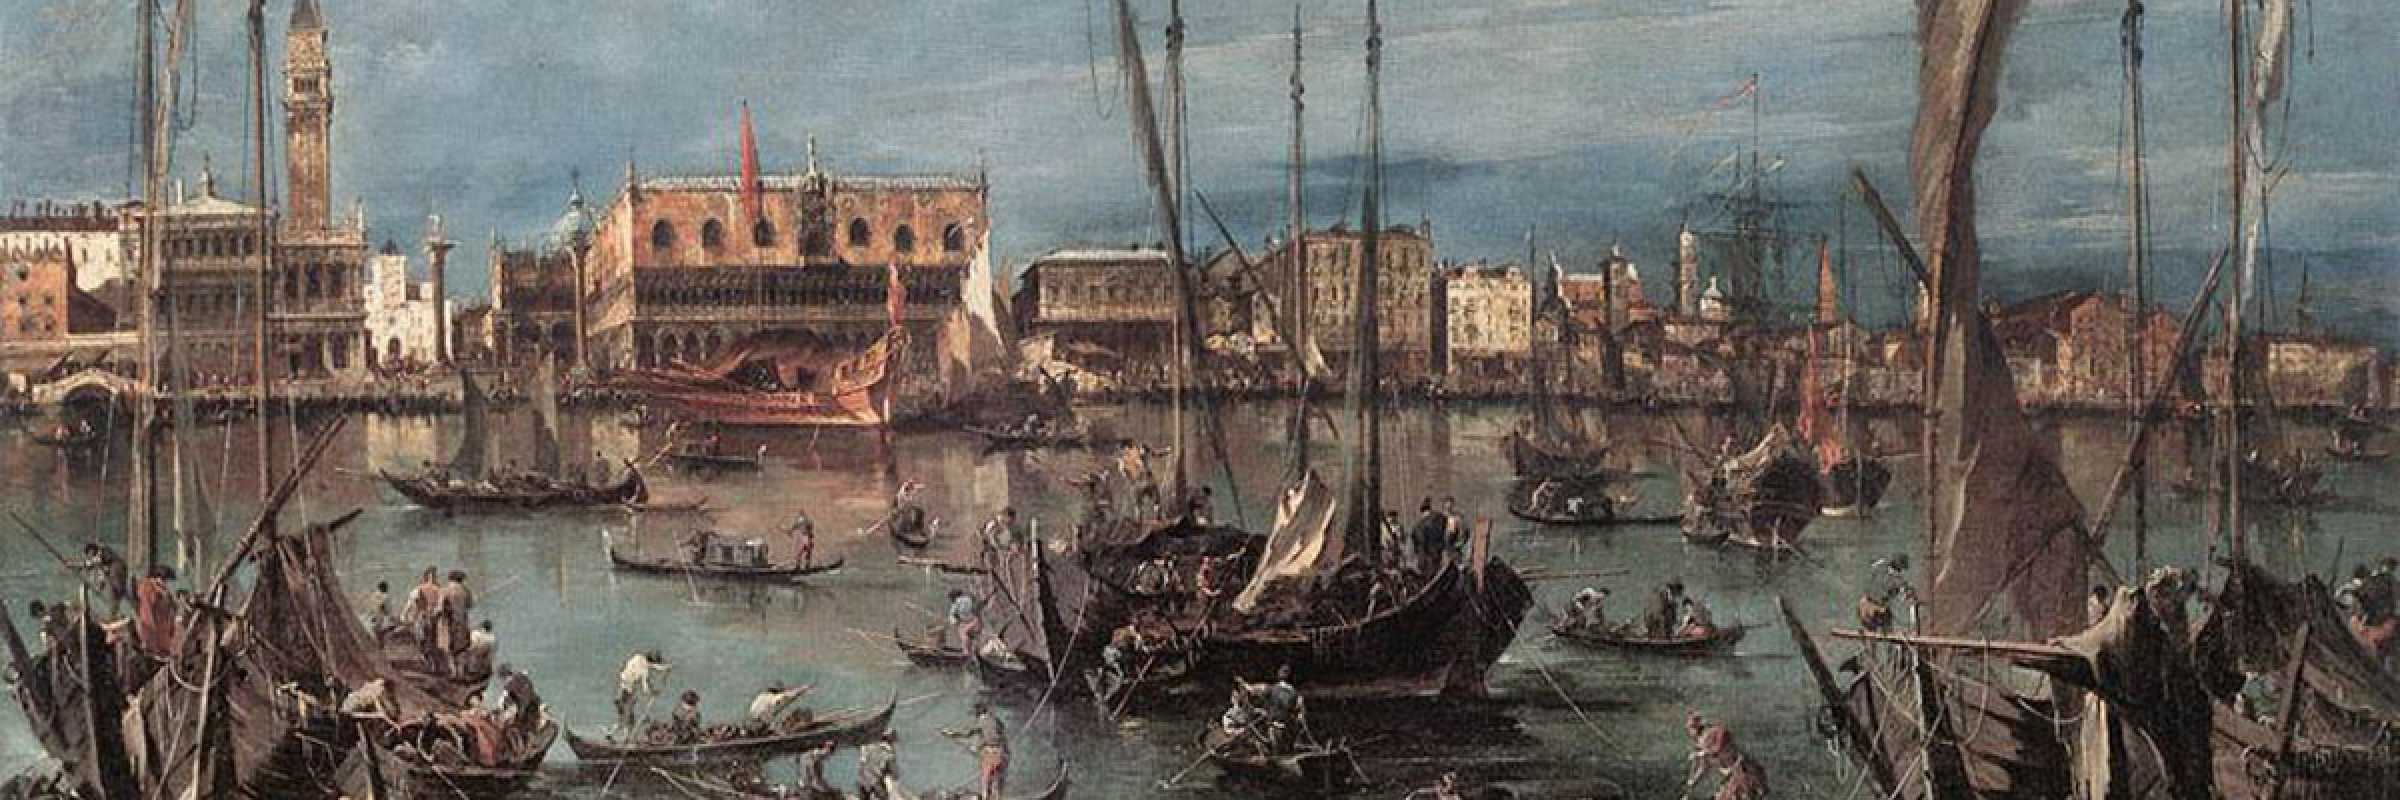 Il molo e Riva degli Schiavoni dal bacino di San Marco - Francesco Guardi.